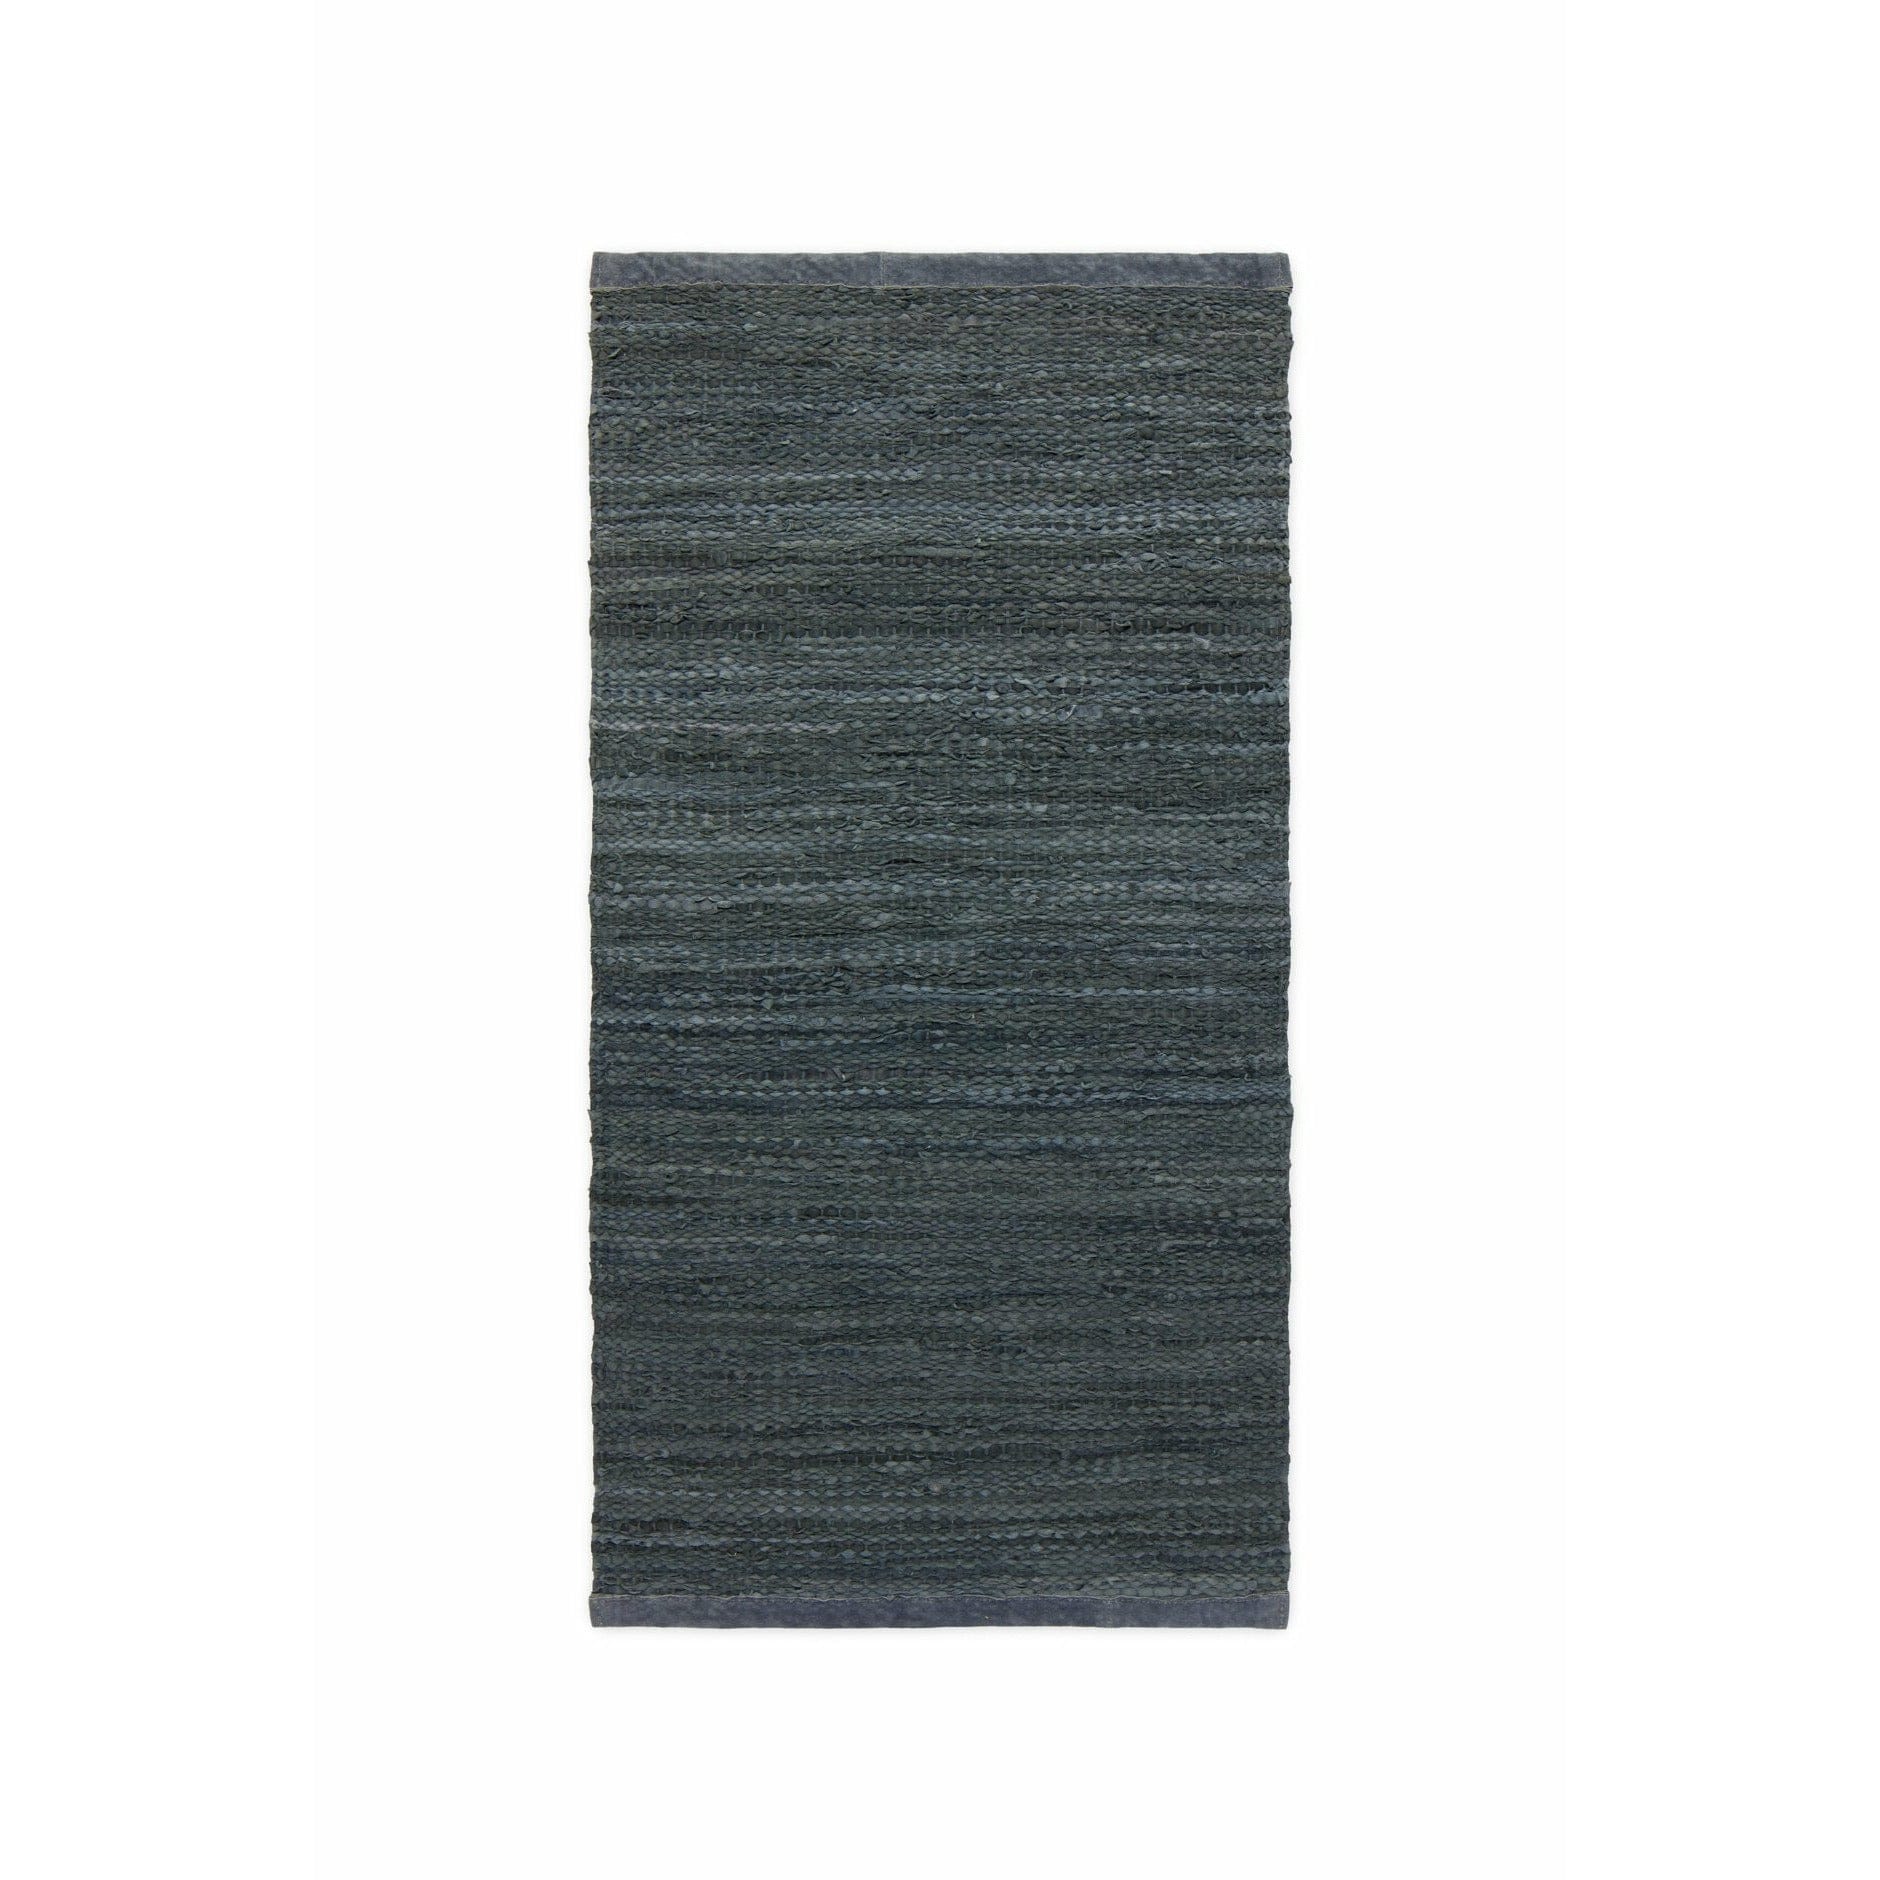 Tappeto in pelle solida grigio scuro, 60 x 90 cm